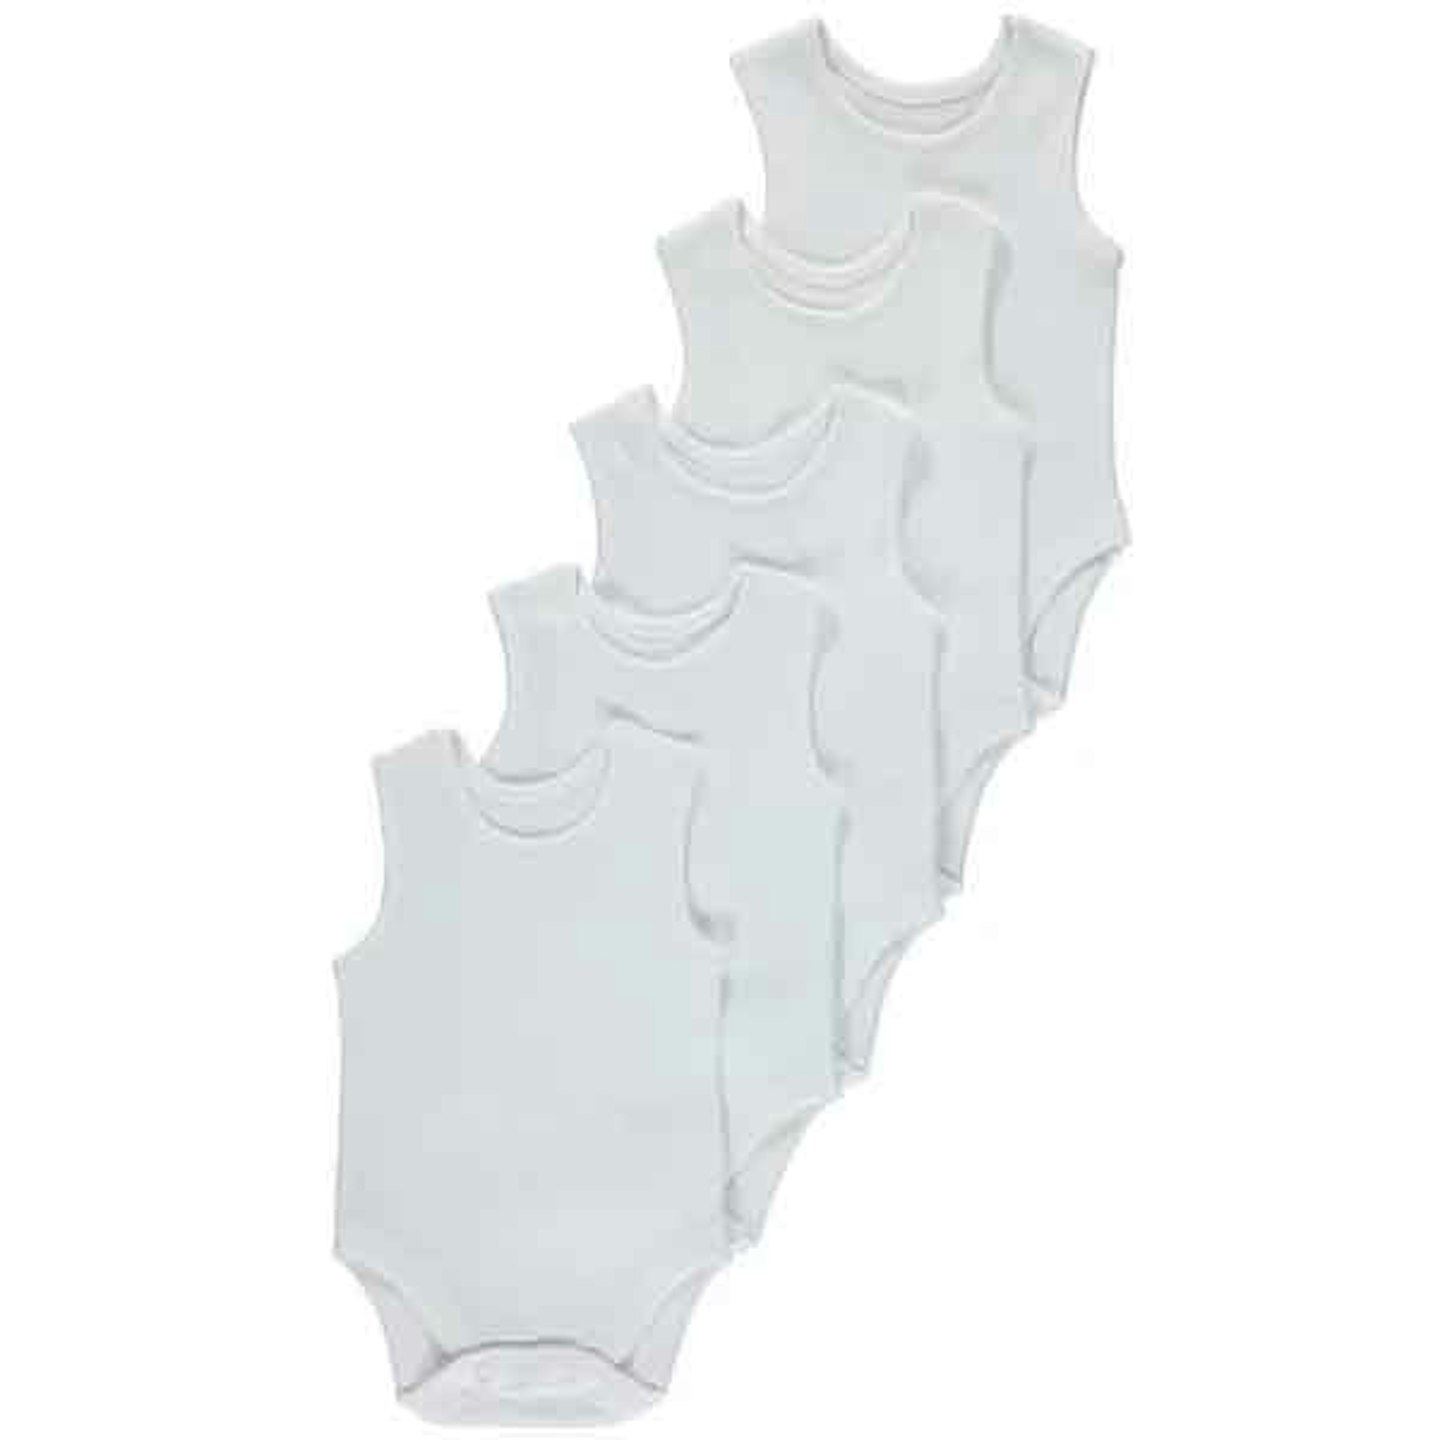 White Sleeveless Bodysuit 5 Pack